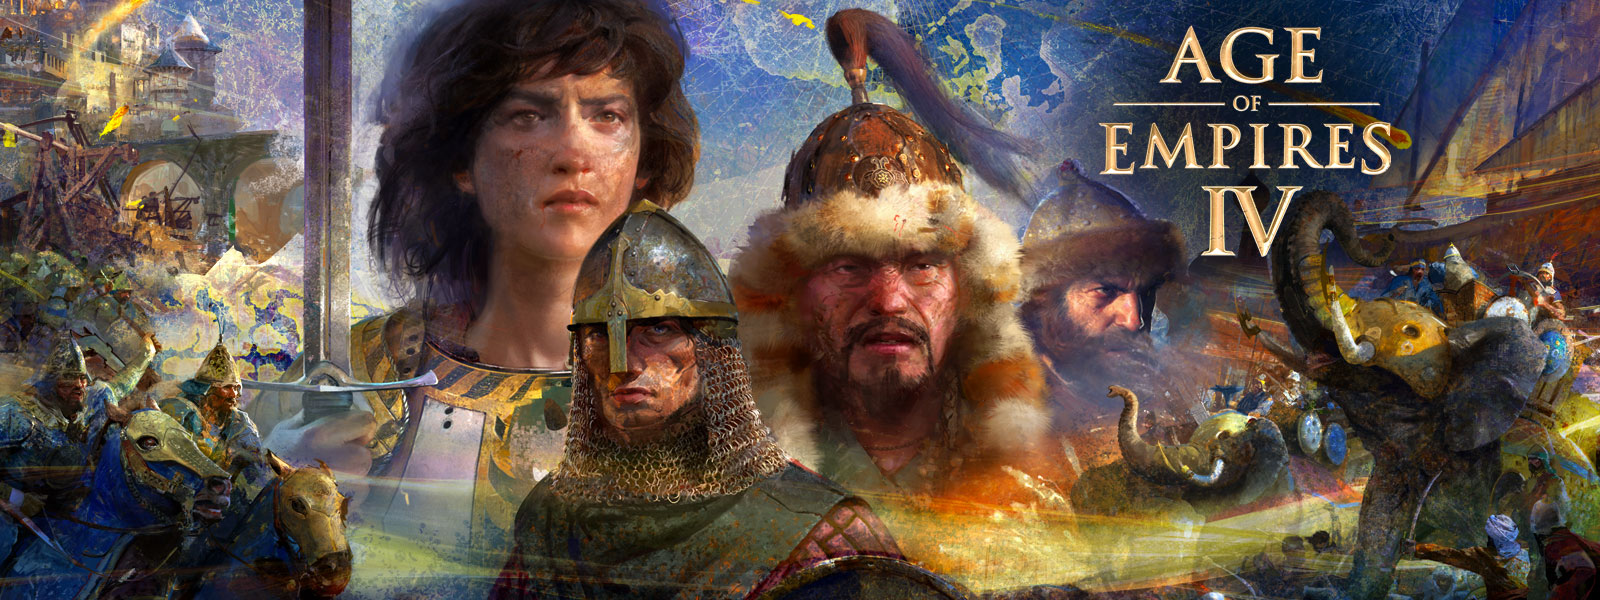 Age of Empires IV. Quatro personagens com cenas de guerra, elefantes e homens a cavalo ao redor em um plano de fundo do mapa